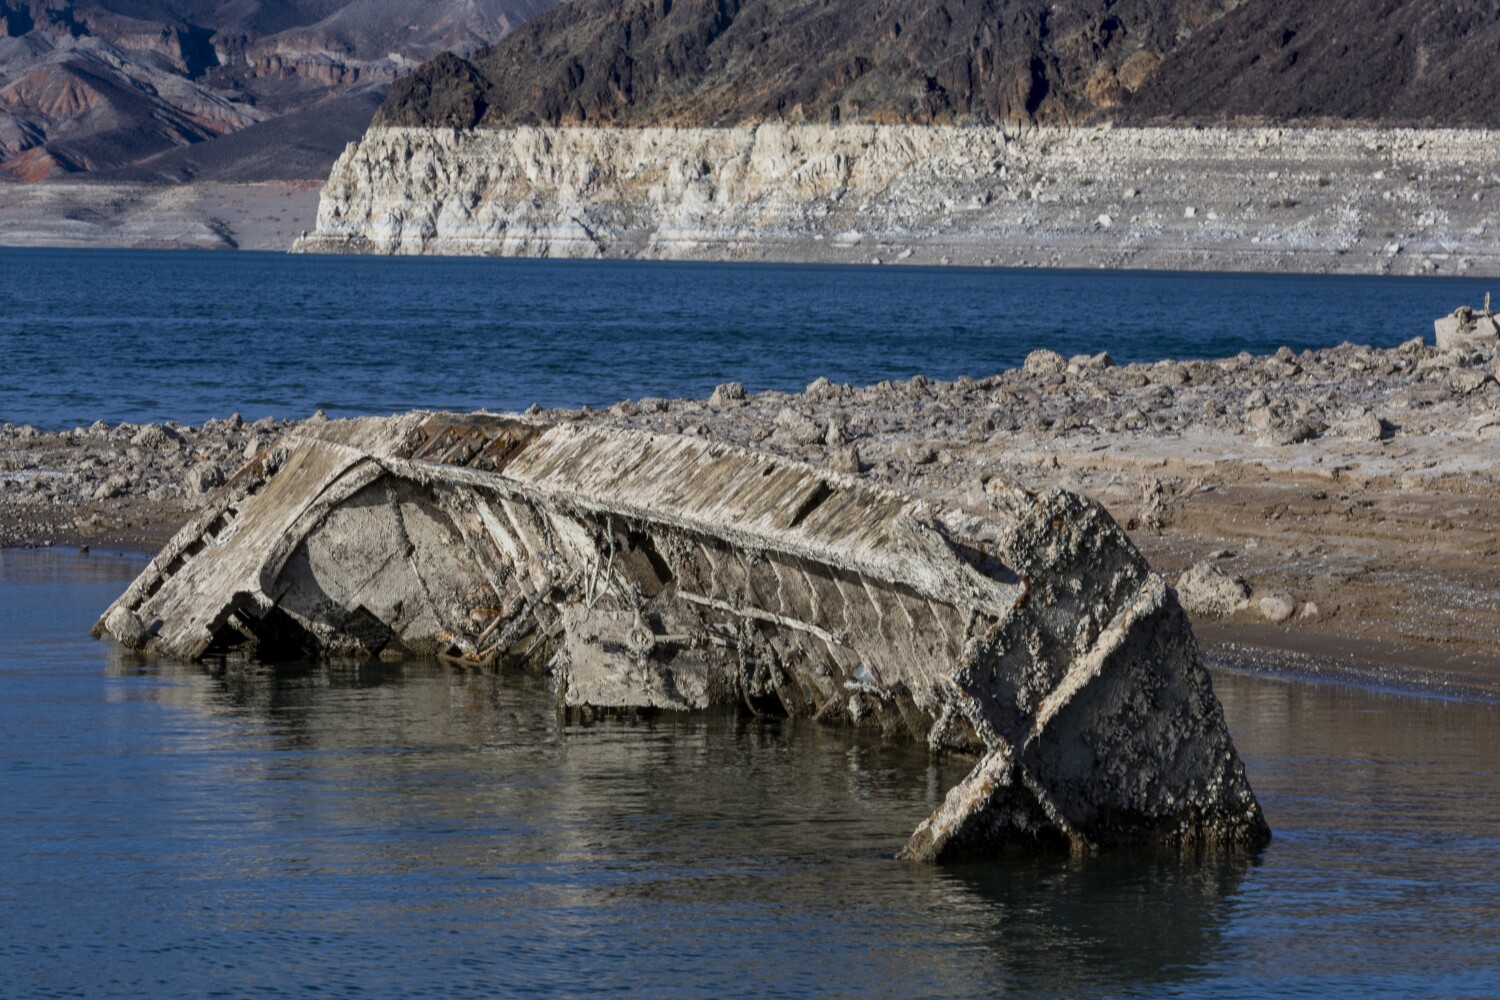 Lake Mead's receding waters reveal a sunken WWII-era vessel